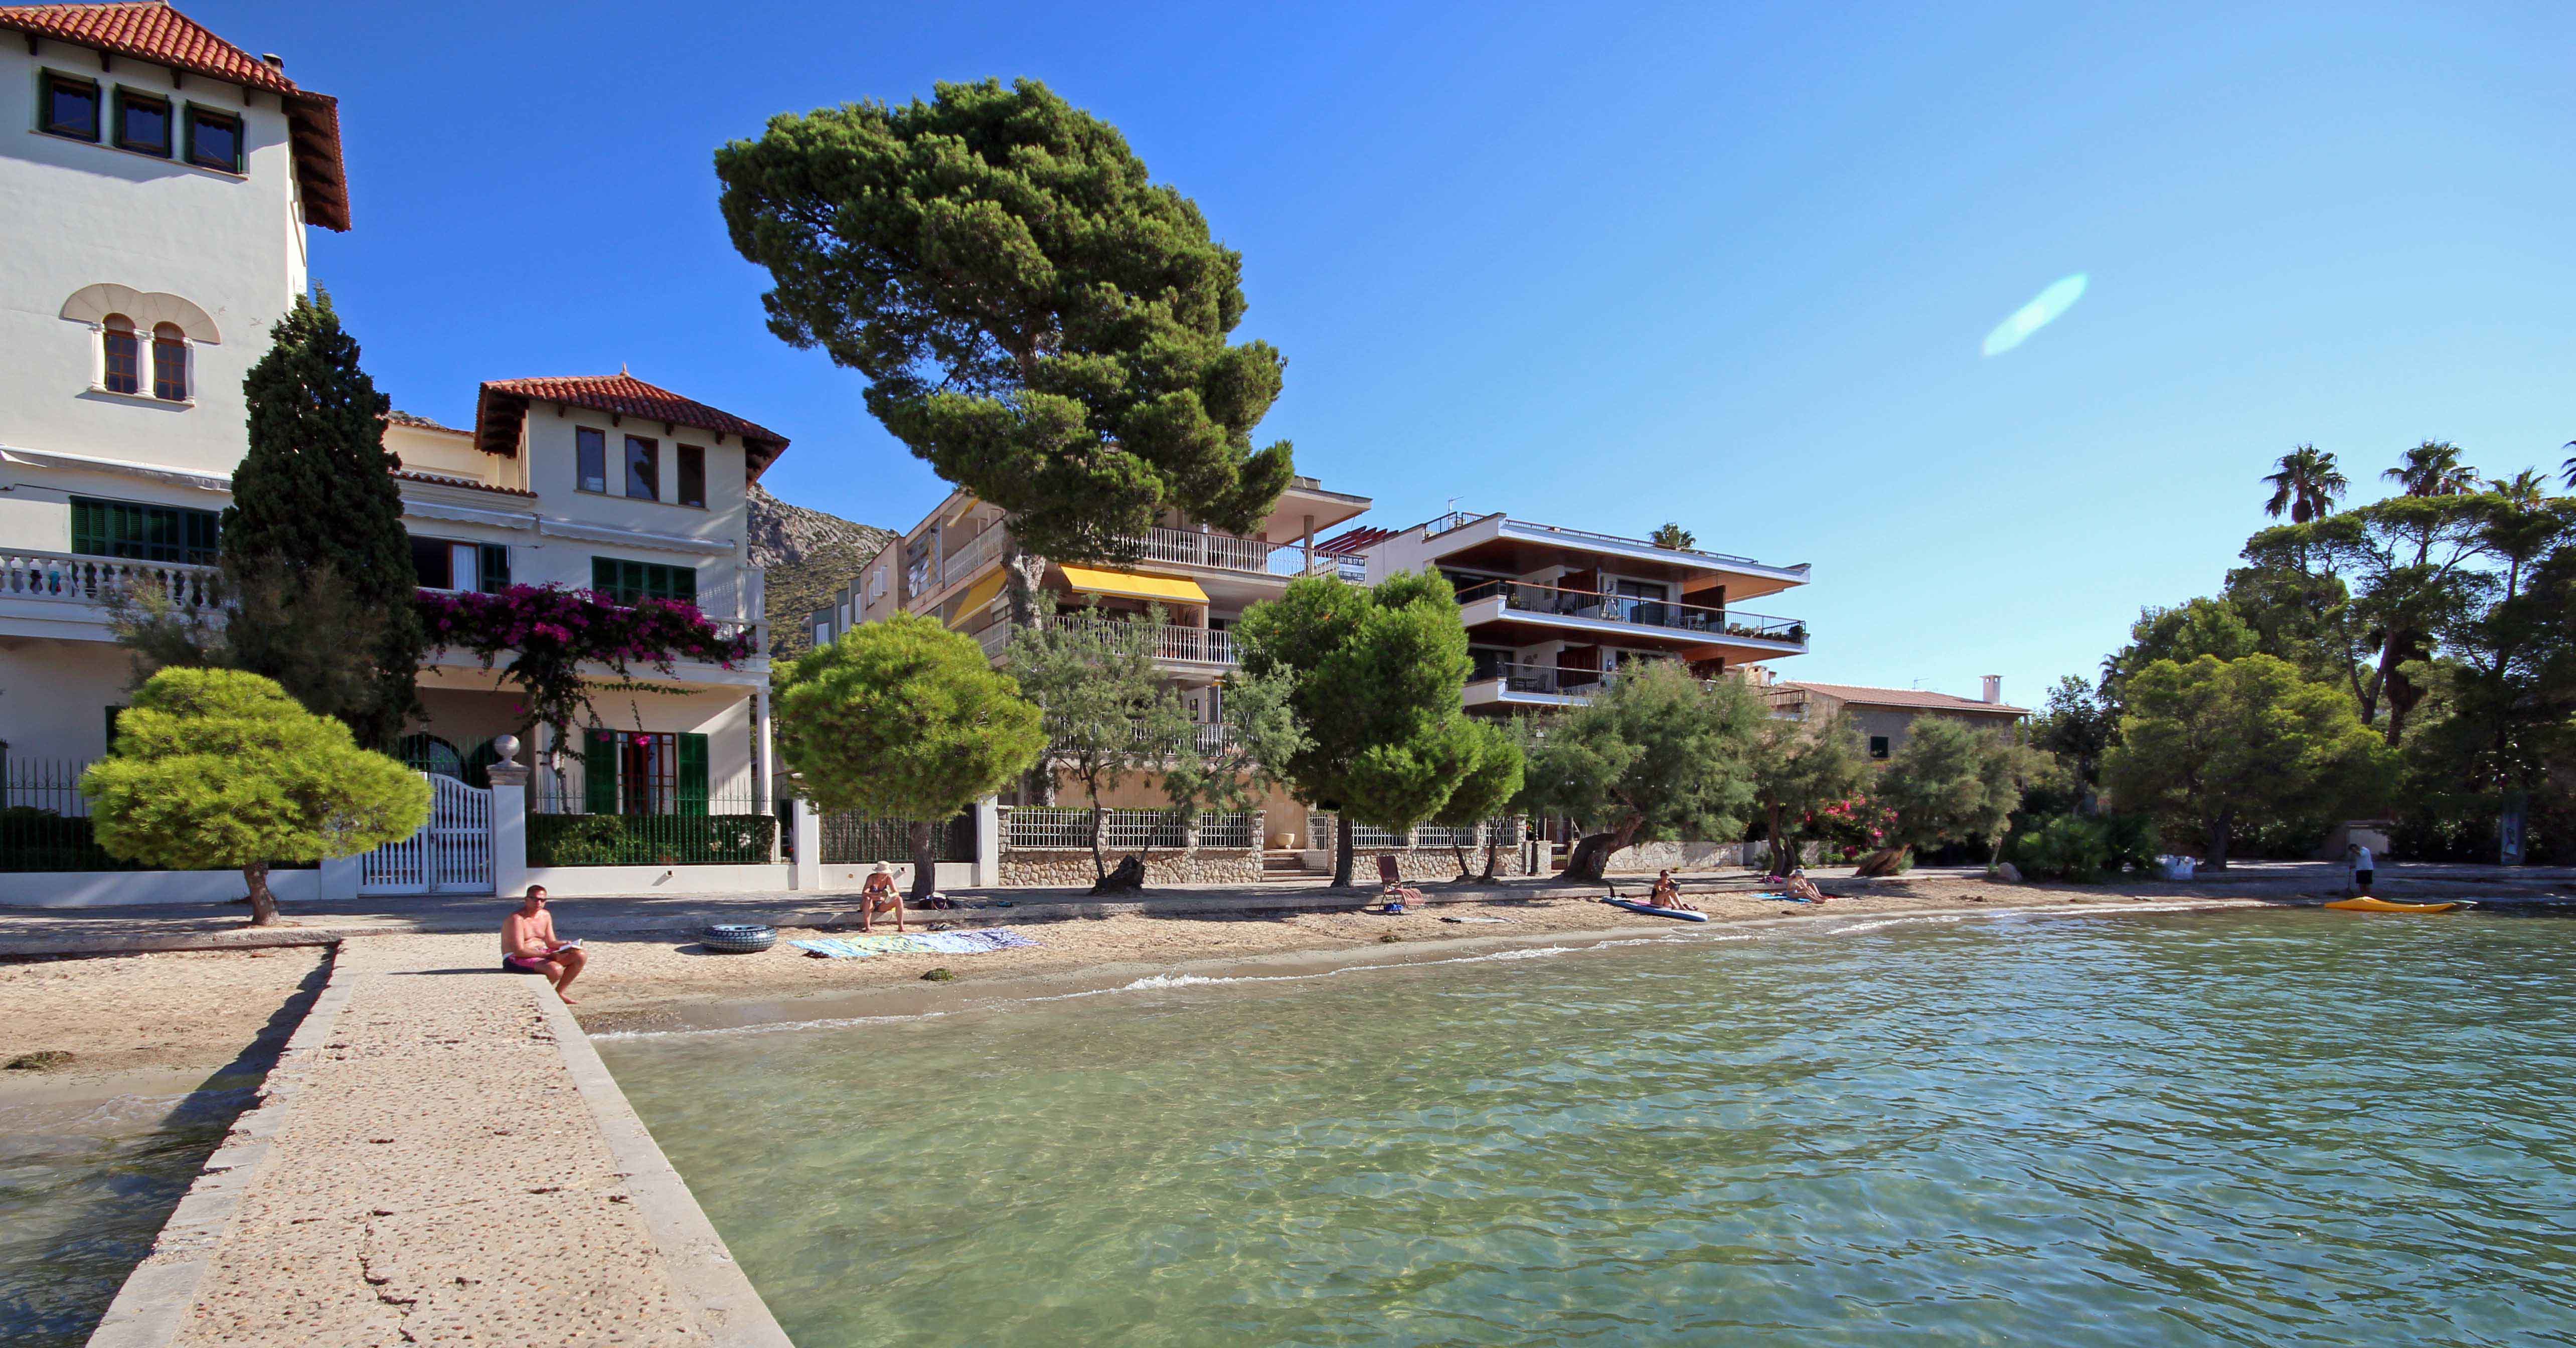 Mallorca property market